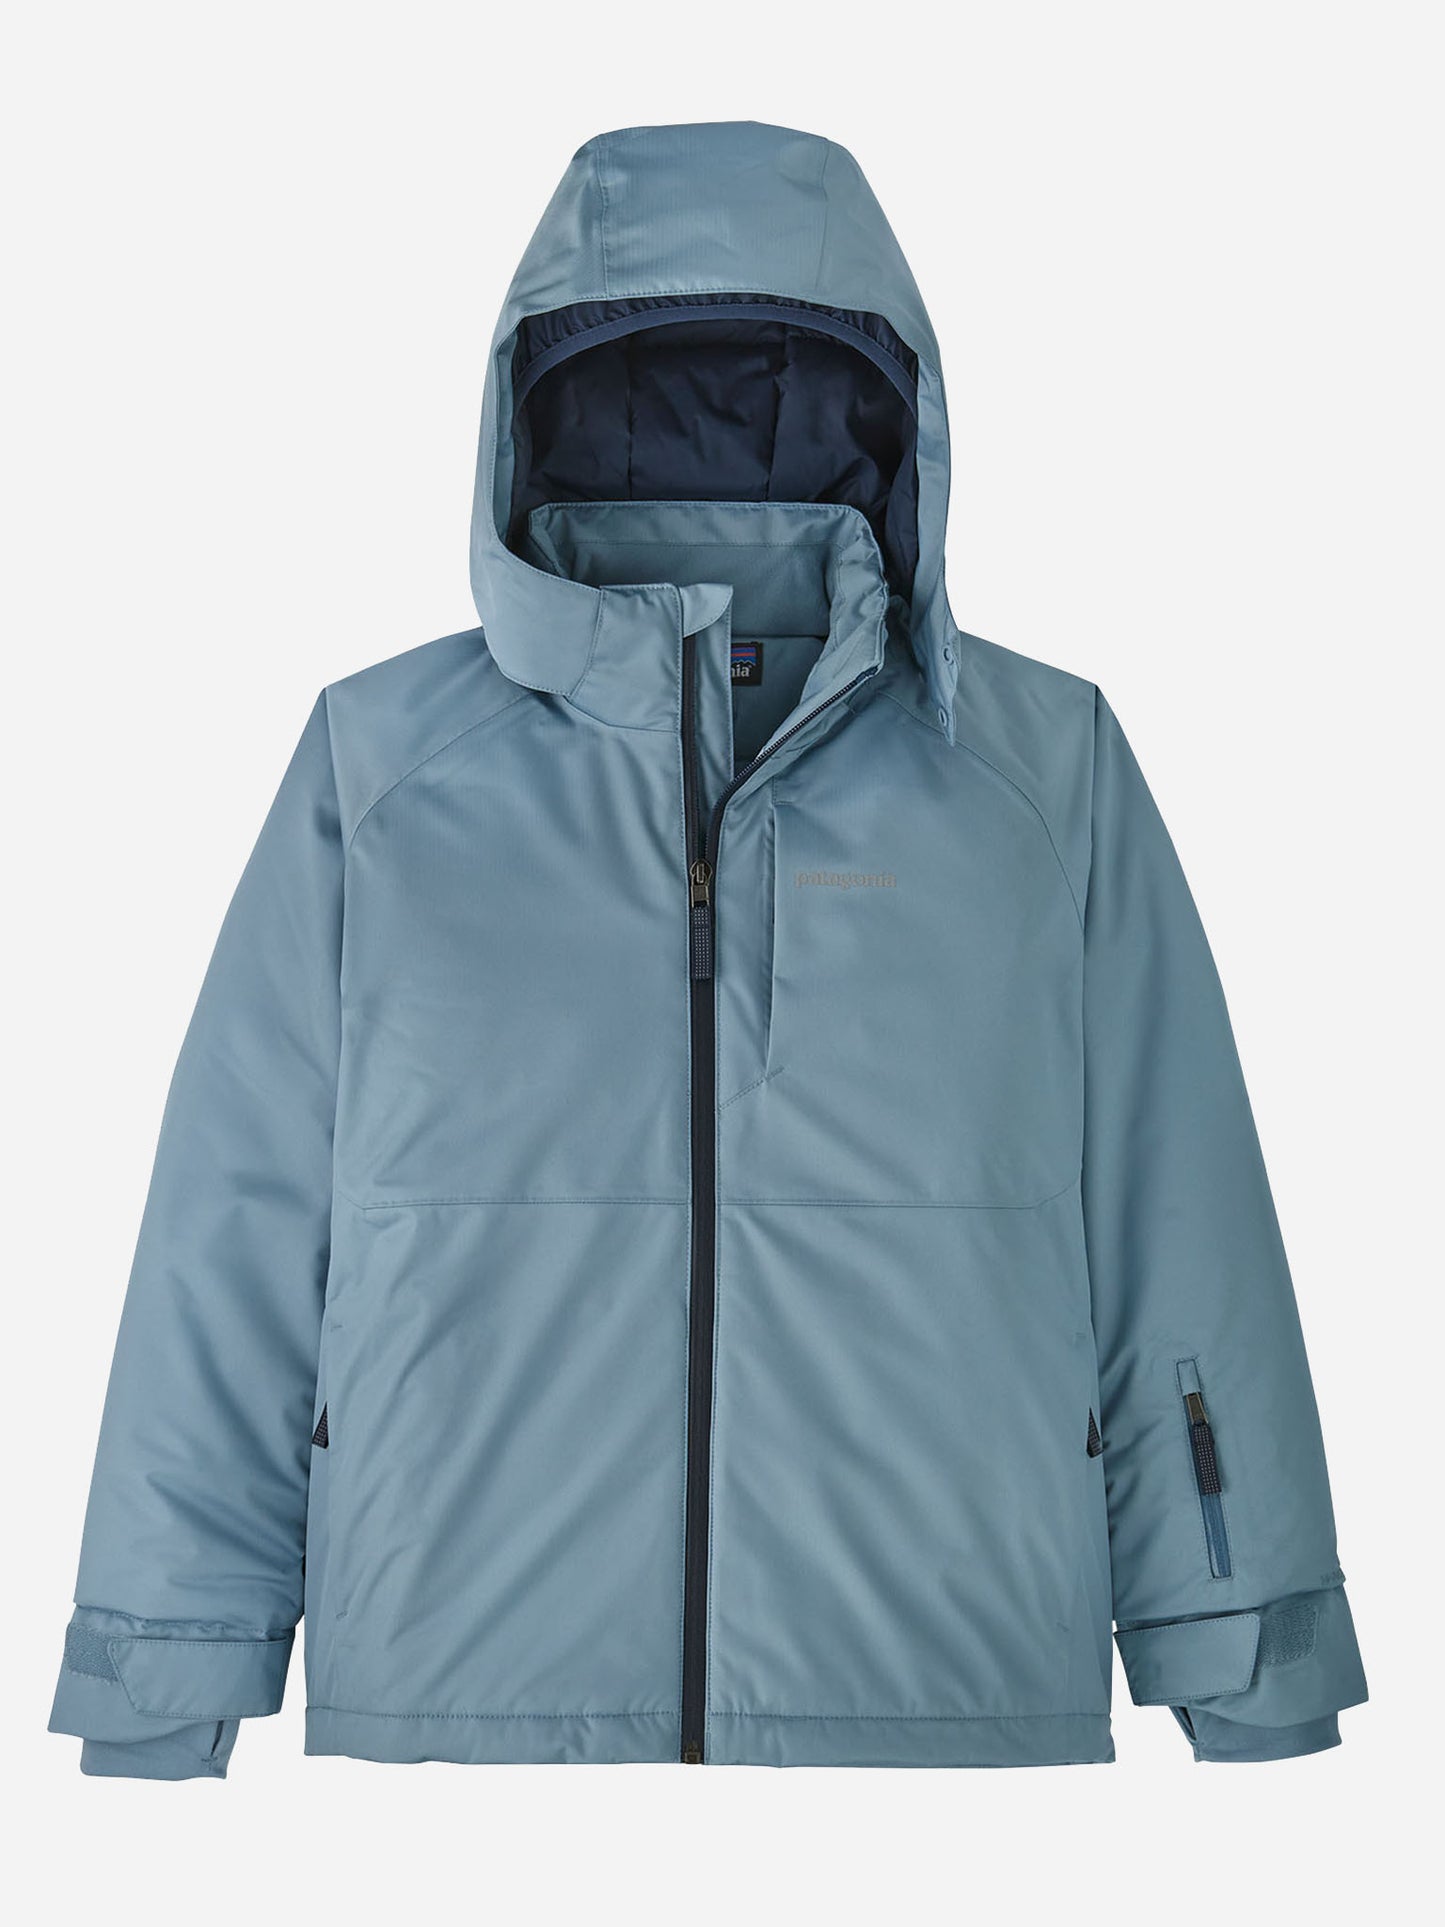 Patagonia Boys' Snowshot Jacket